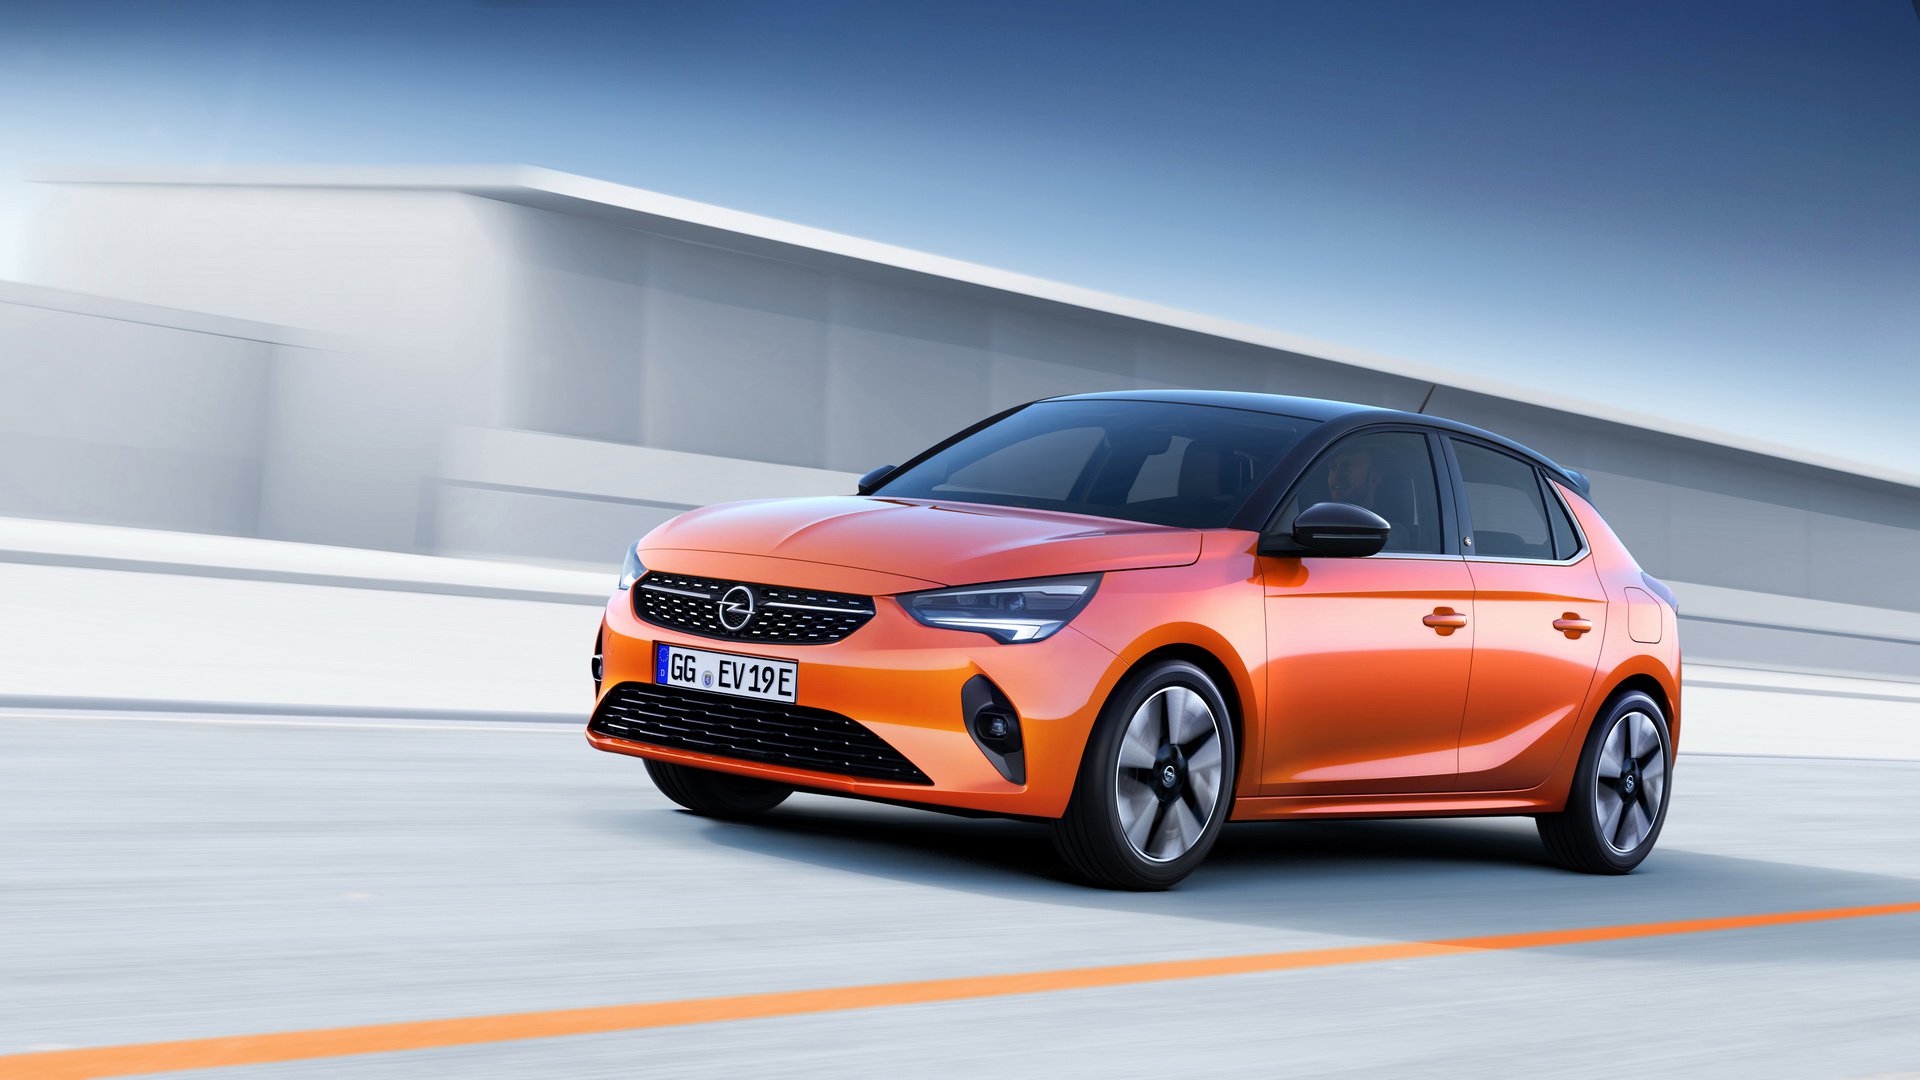 Yeni nesil Opel Corsa'nın elektrikli versiyonu tanıtıldı: Karşınızda Corsa-e